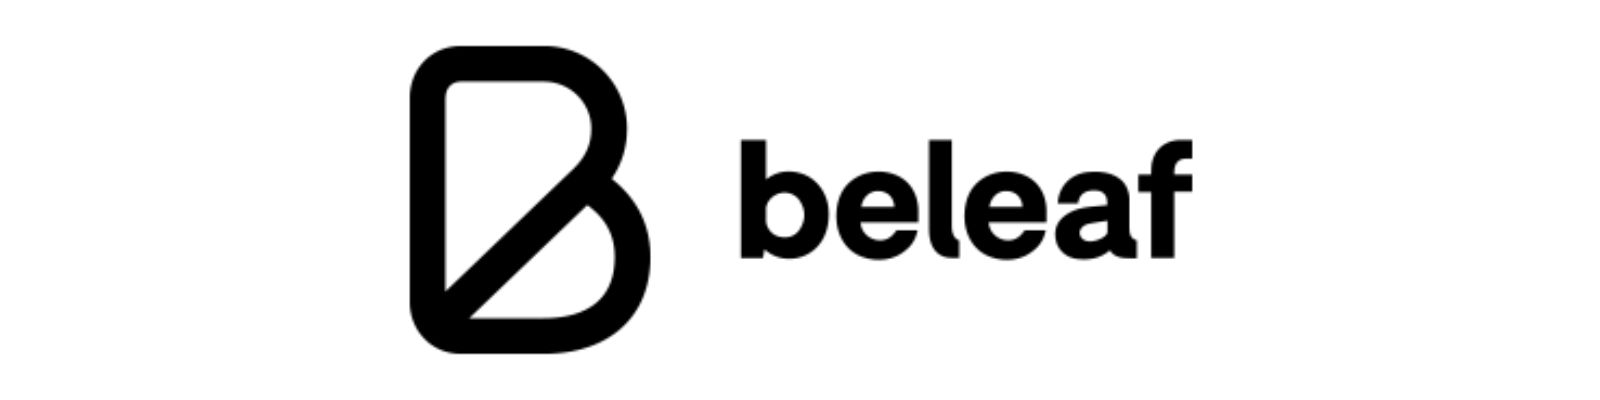 WhatsApp Beleaf: Telefones e canais de atendimento!